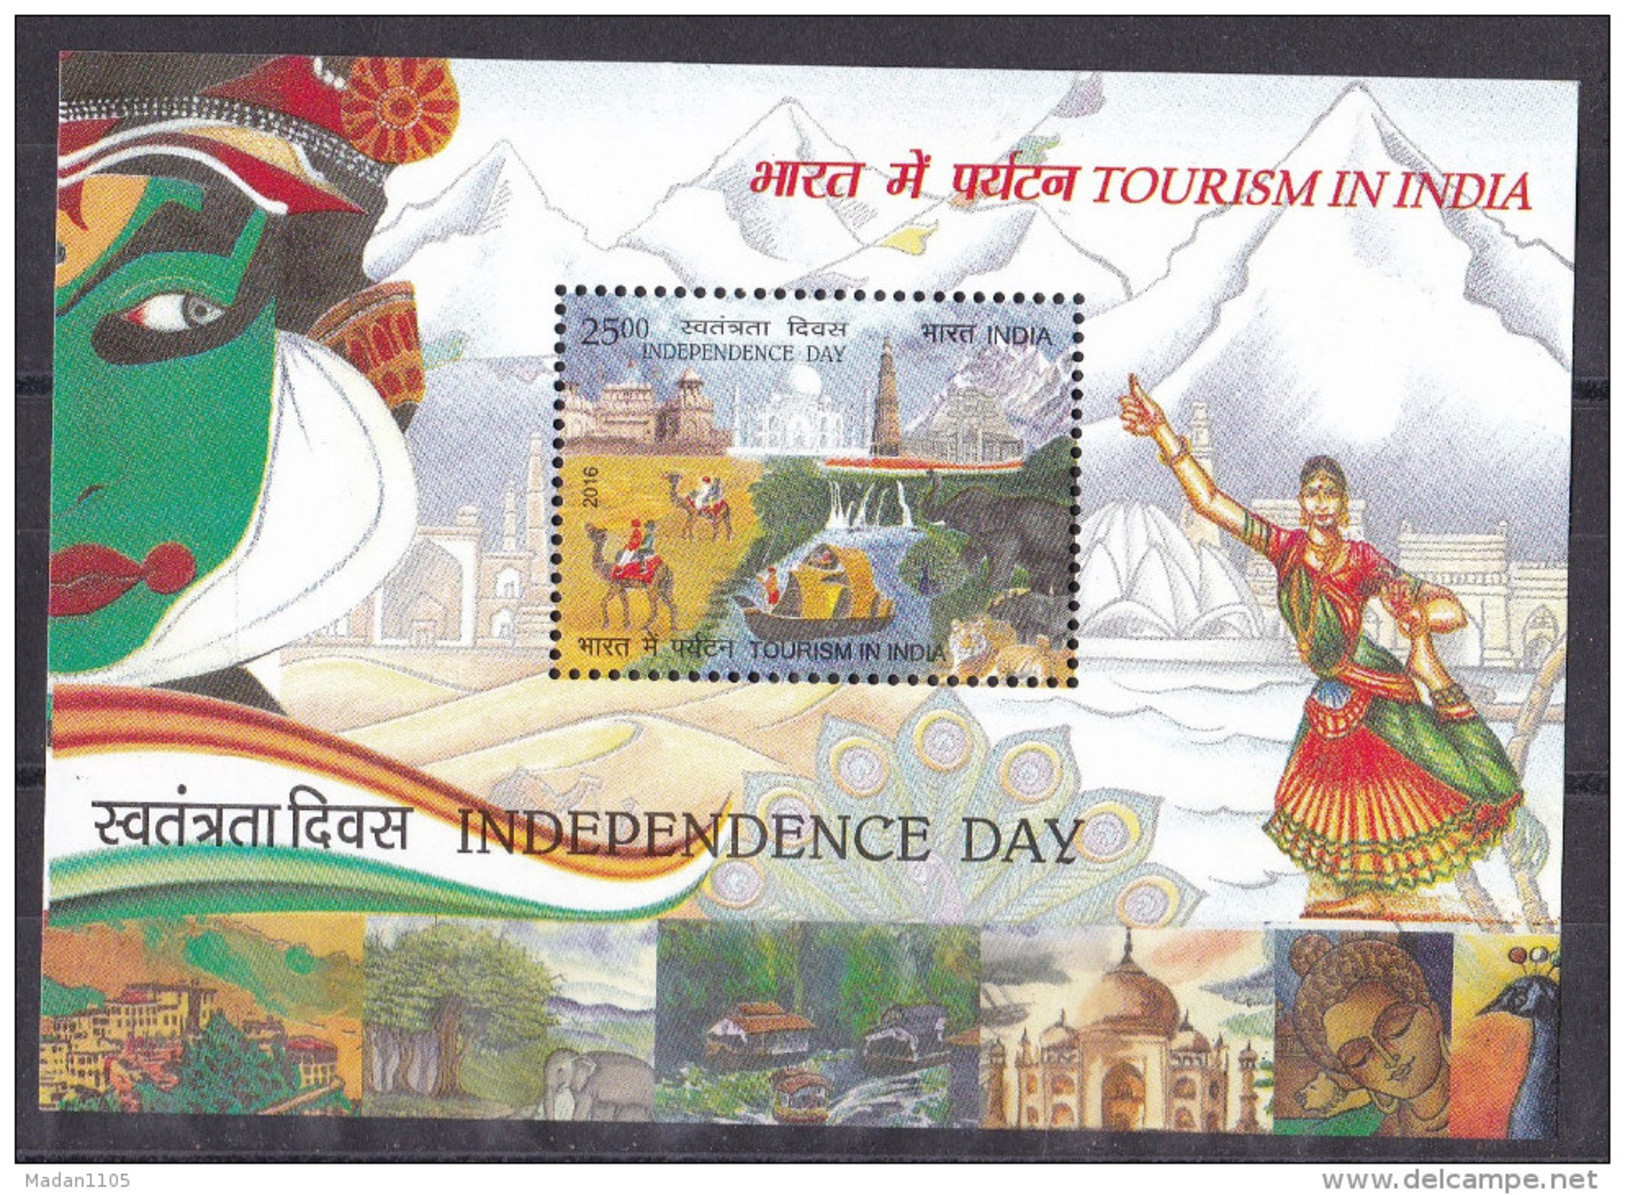 INDIA, 2016, Independence Day, Tourism, Dance, Taj Mahal, Qutub Minar, Fauna, Tiger, Camel,  Miniature Sheet, MNH, (**) - Neufs